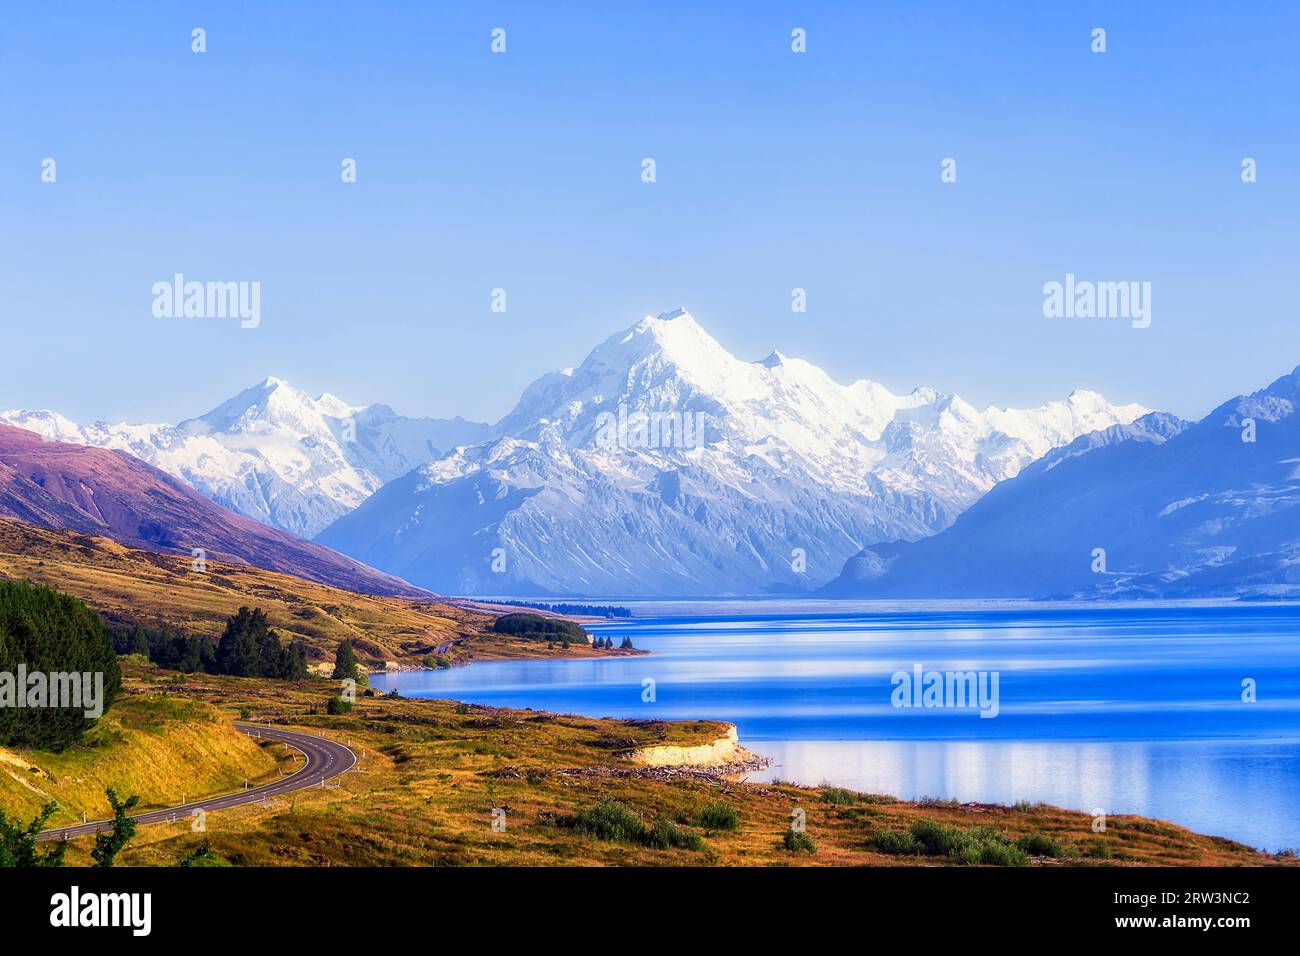 Mt Cook sur le lac Pukaki en Nouvelle-Zélande Banque D'Images